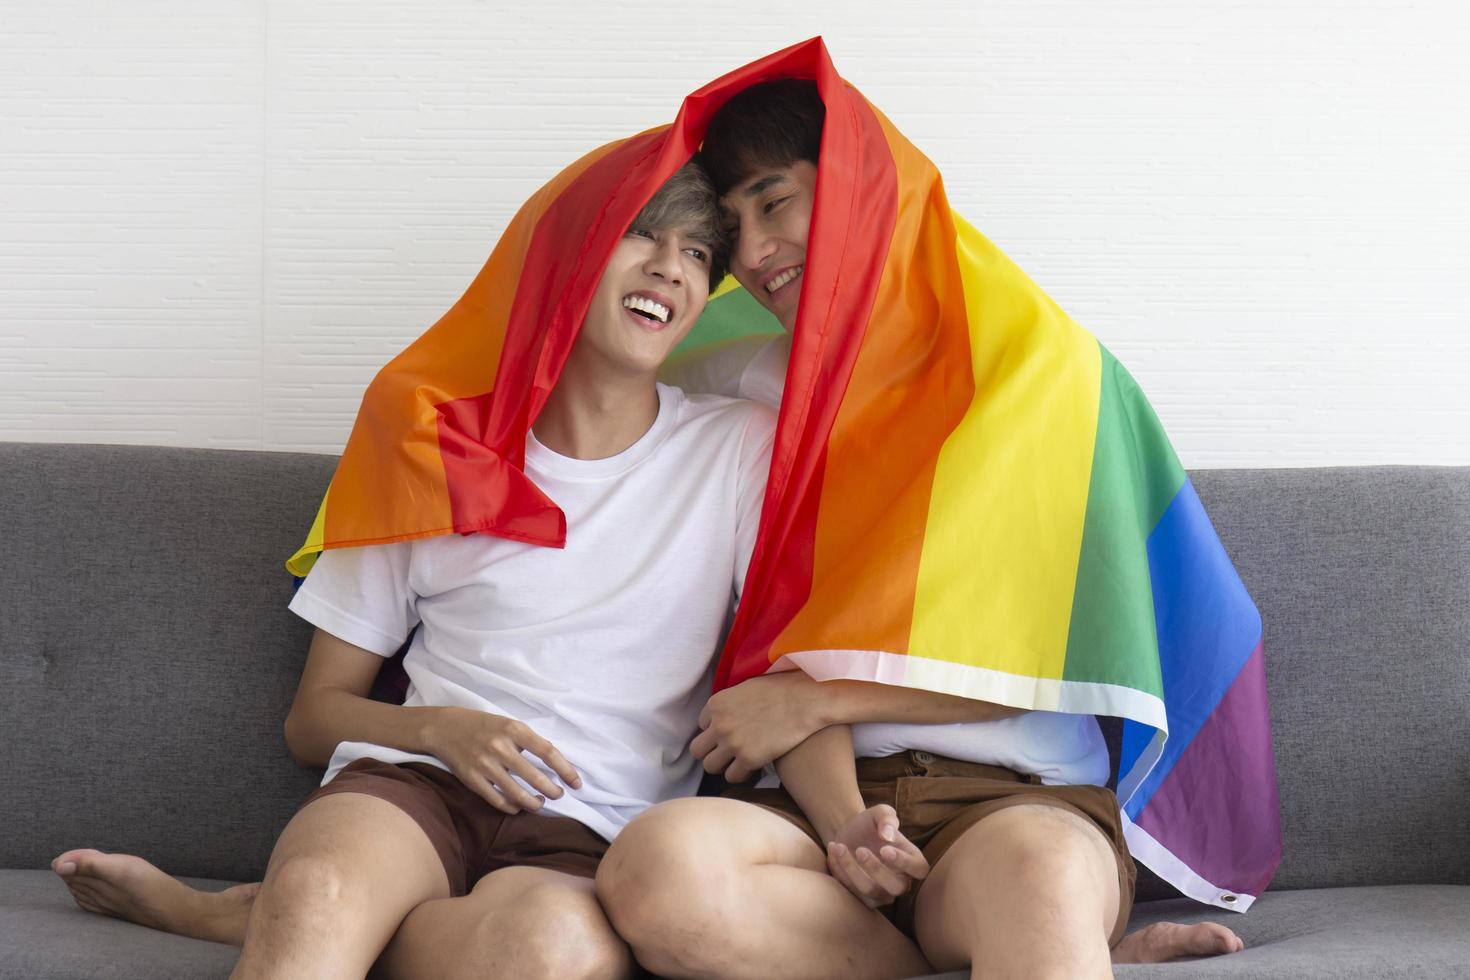 een mannelijk stel met een aziatische man zittend op een bank, met een veelkleurige vlag met tekens van lhbt op hun hoofd, openlijk homoseksuele mannen die lhbt-ideeën accepteren. foto